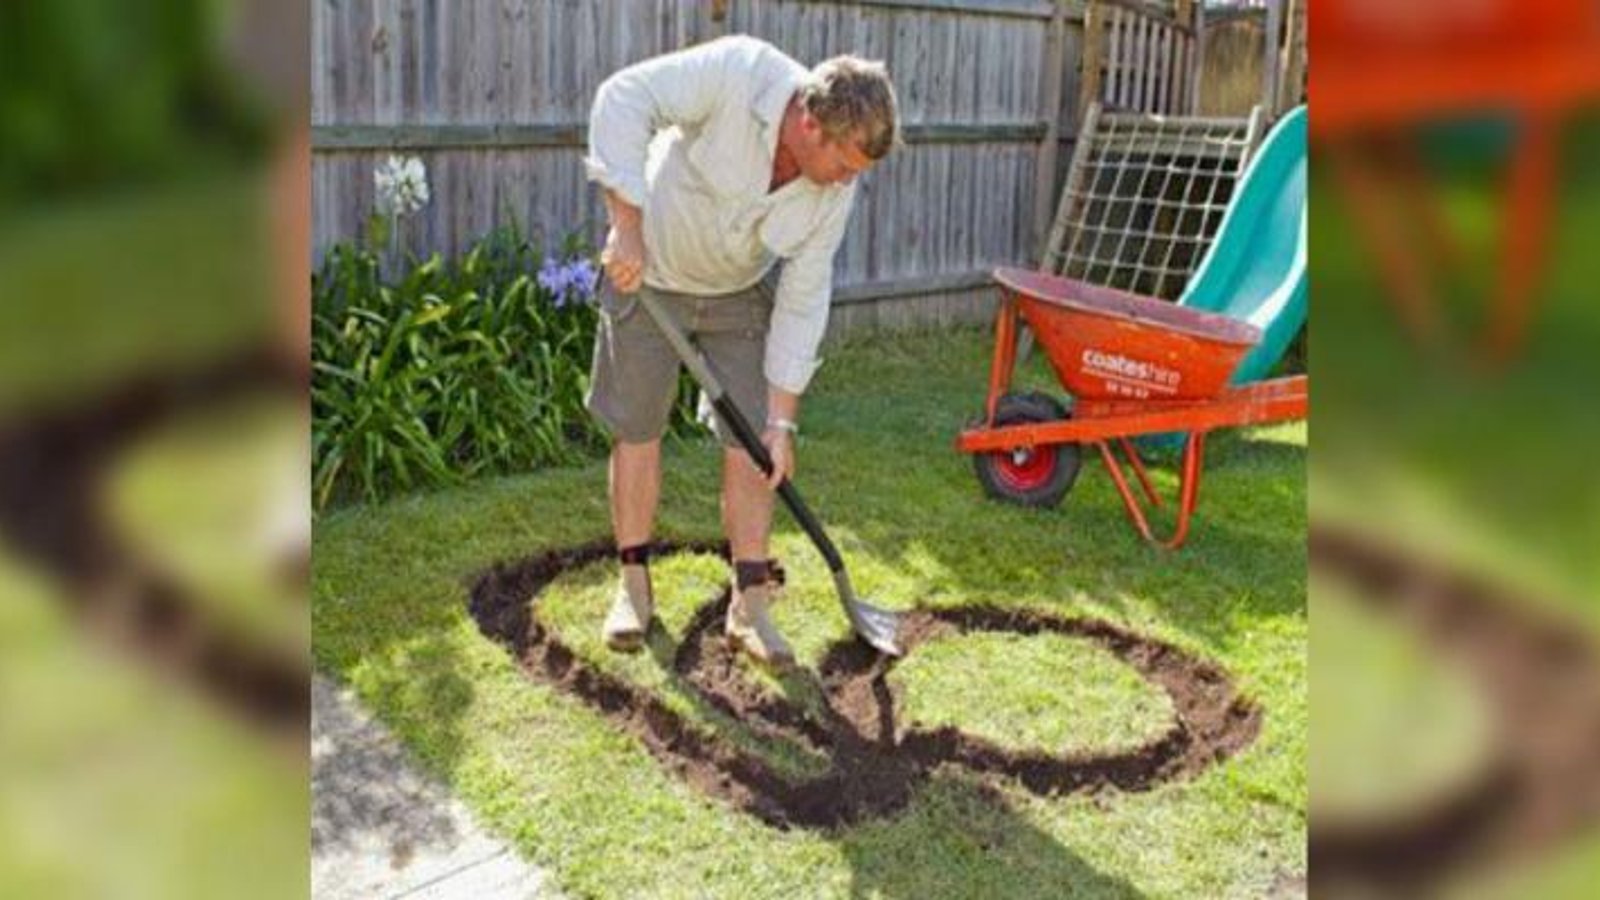 Ce papa a creusé une forme amusante dans le jardin! Ce qu'il en a fait? C'est brillant! 